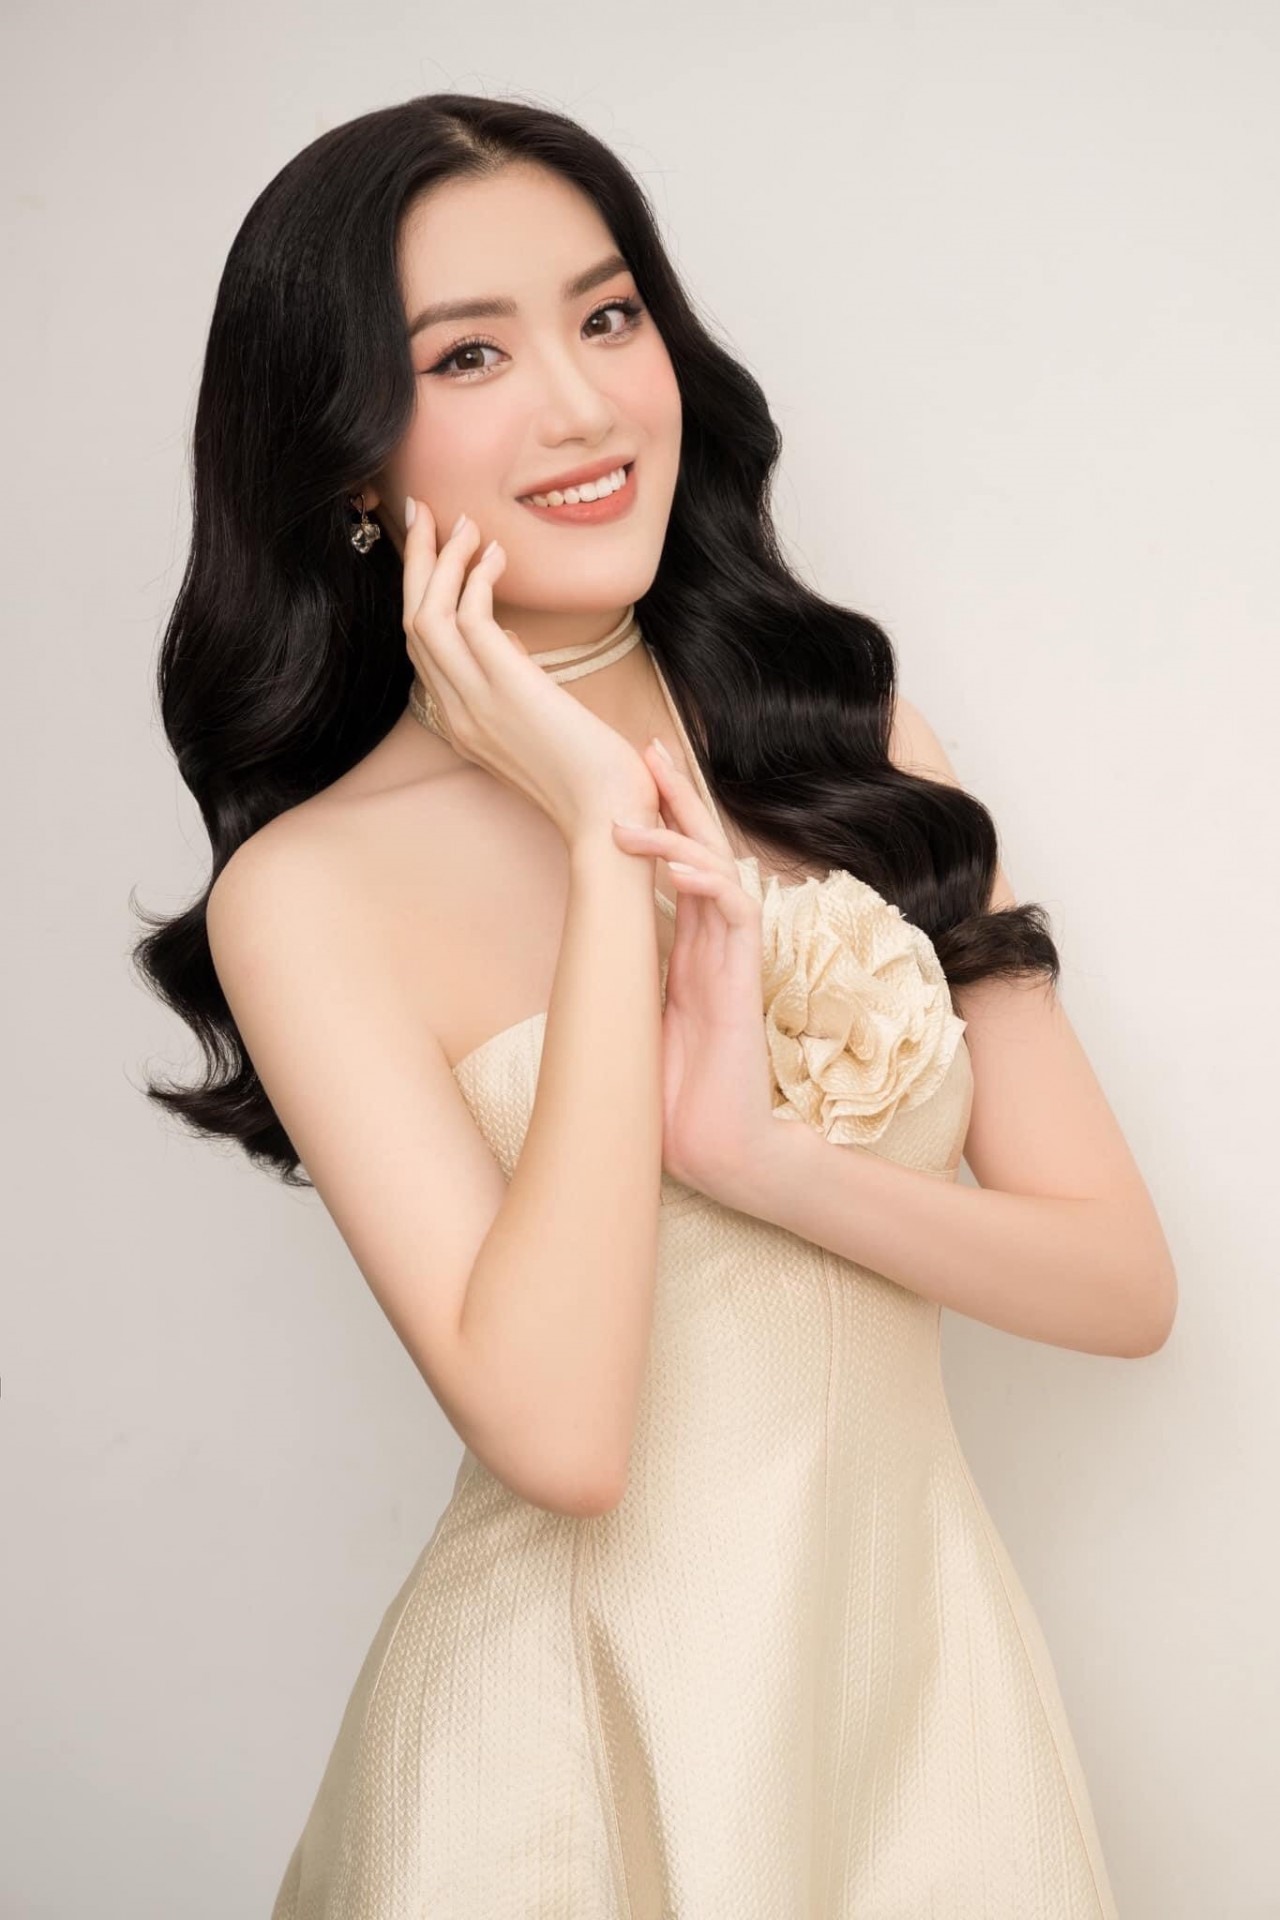 Sự kiện Hoa hậu Việt Nam 2022 là một trong những sự kiện được mong đợi nhất trong làng giải trí Việt Nam. Với những người đẹp tài năng và tiềm năng nhất đất nước, bạn sẽ không thể bỏ qua những ảnh chụp sắc nét của họ, bởi lẽ đó là cơ hội để trải nghiệm vẻ đẹp tuyệt đỉnh của các Hoa hậu.